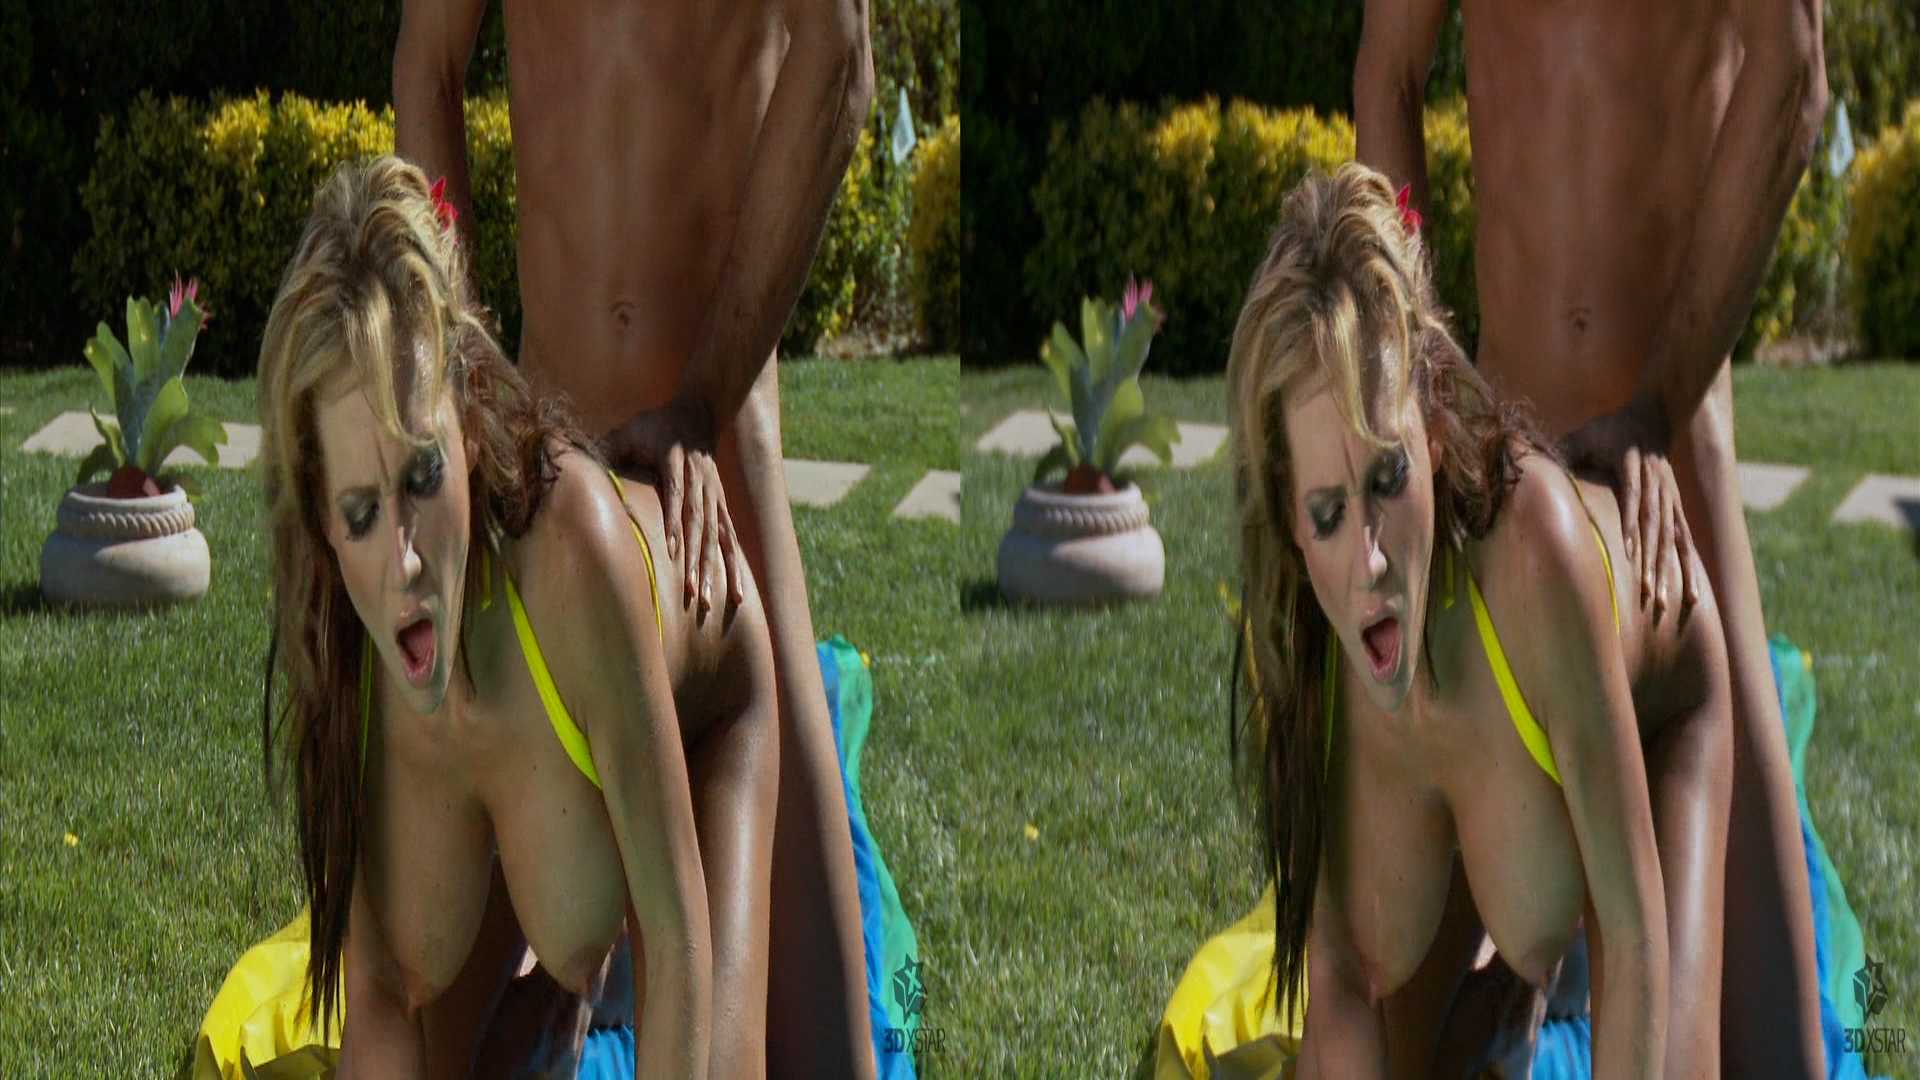 Hsbs 3d Porn - Wet blonde babe fucks and sucks lucky dude in her garden in SBS 3D for 3D TV